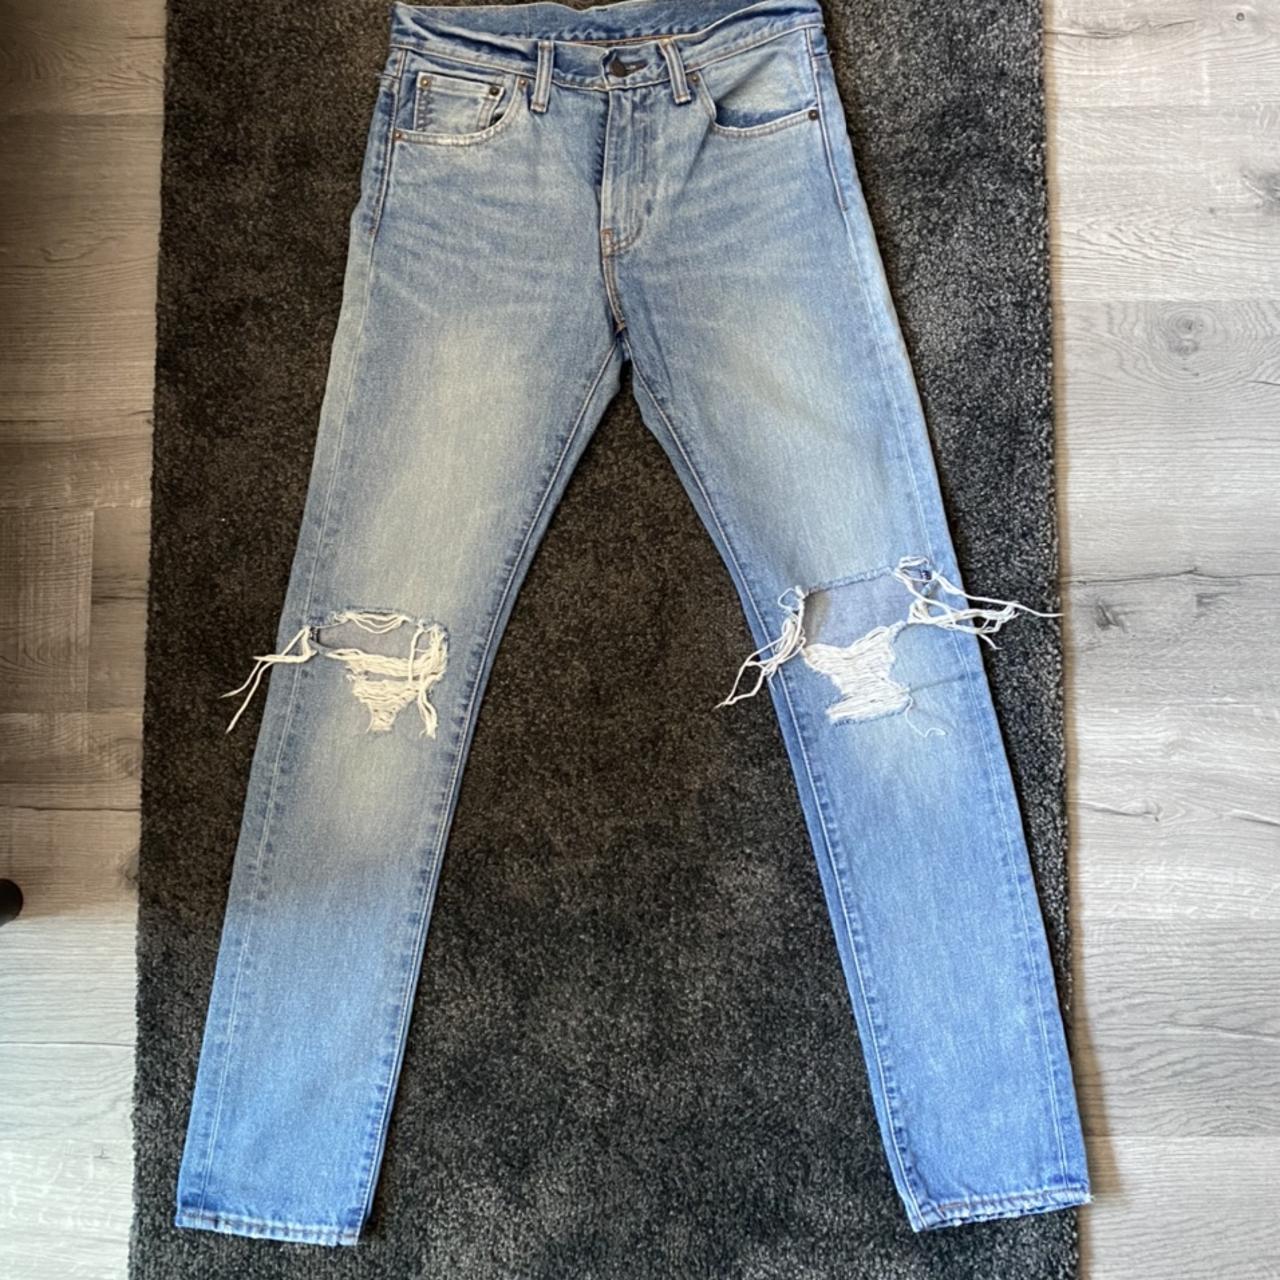 Fire vintage levi ripped jeans 27 width 32... - Depop